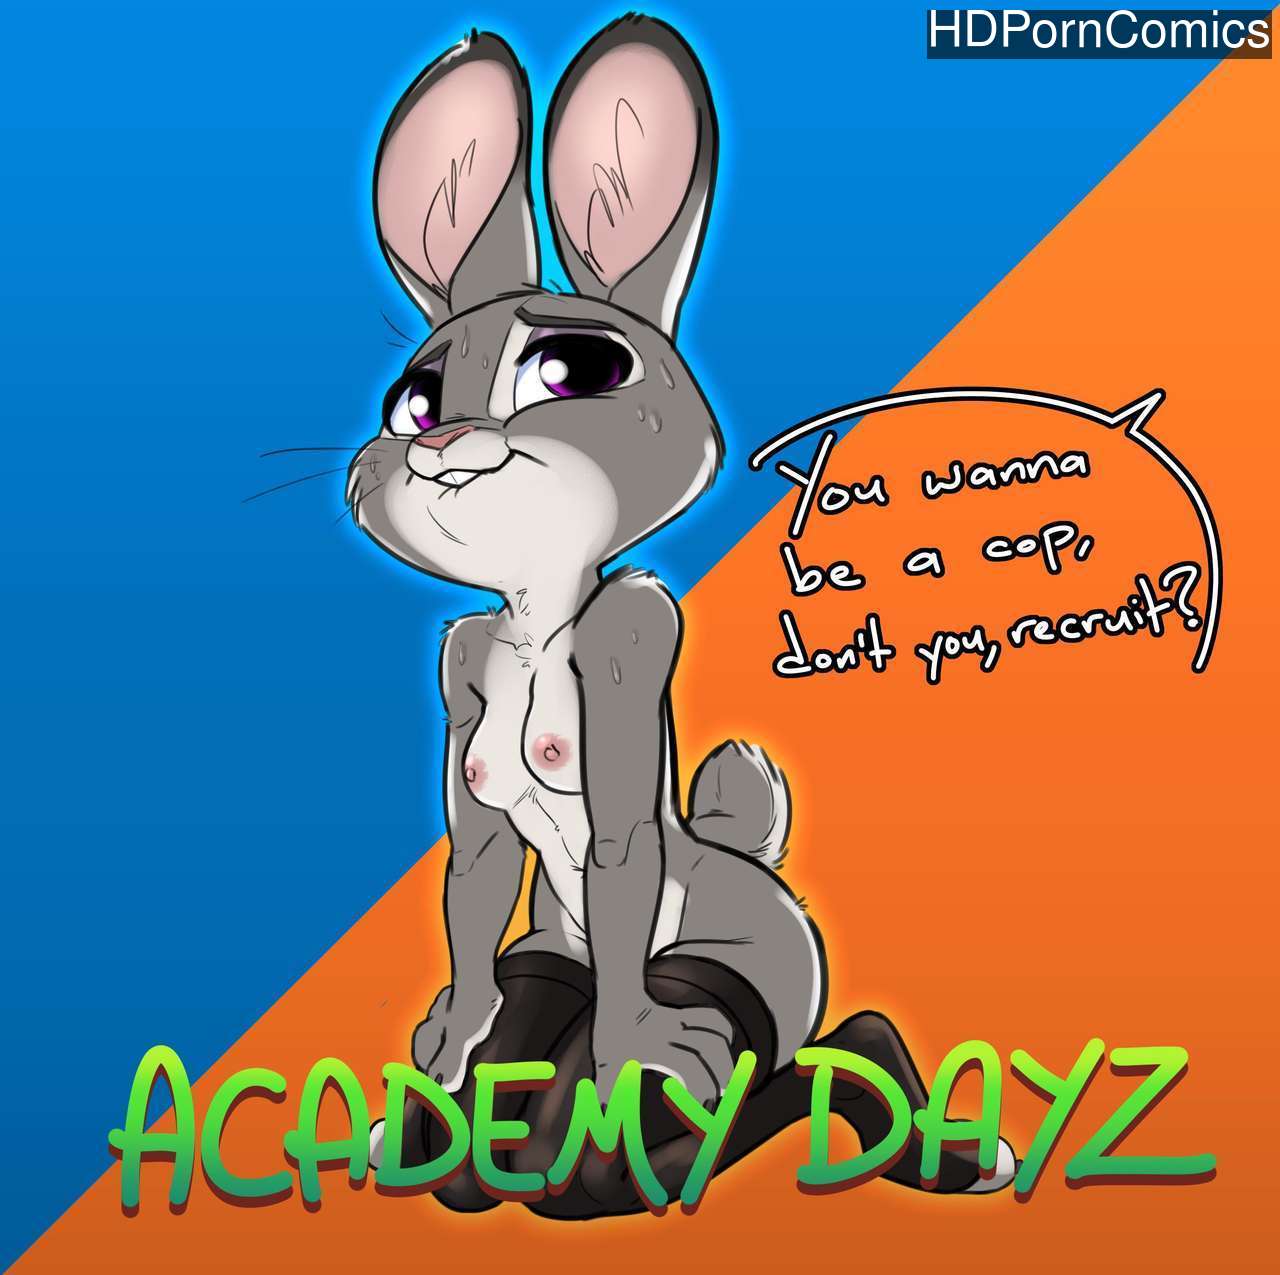 Dayz Mod Porn - Academy Dayz comic porn â€“ HD Porn Comics